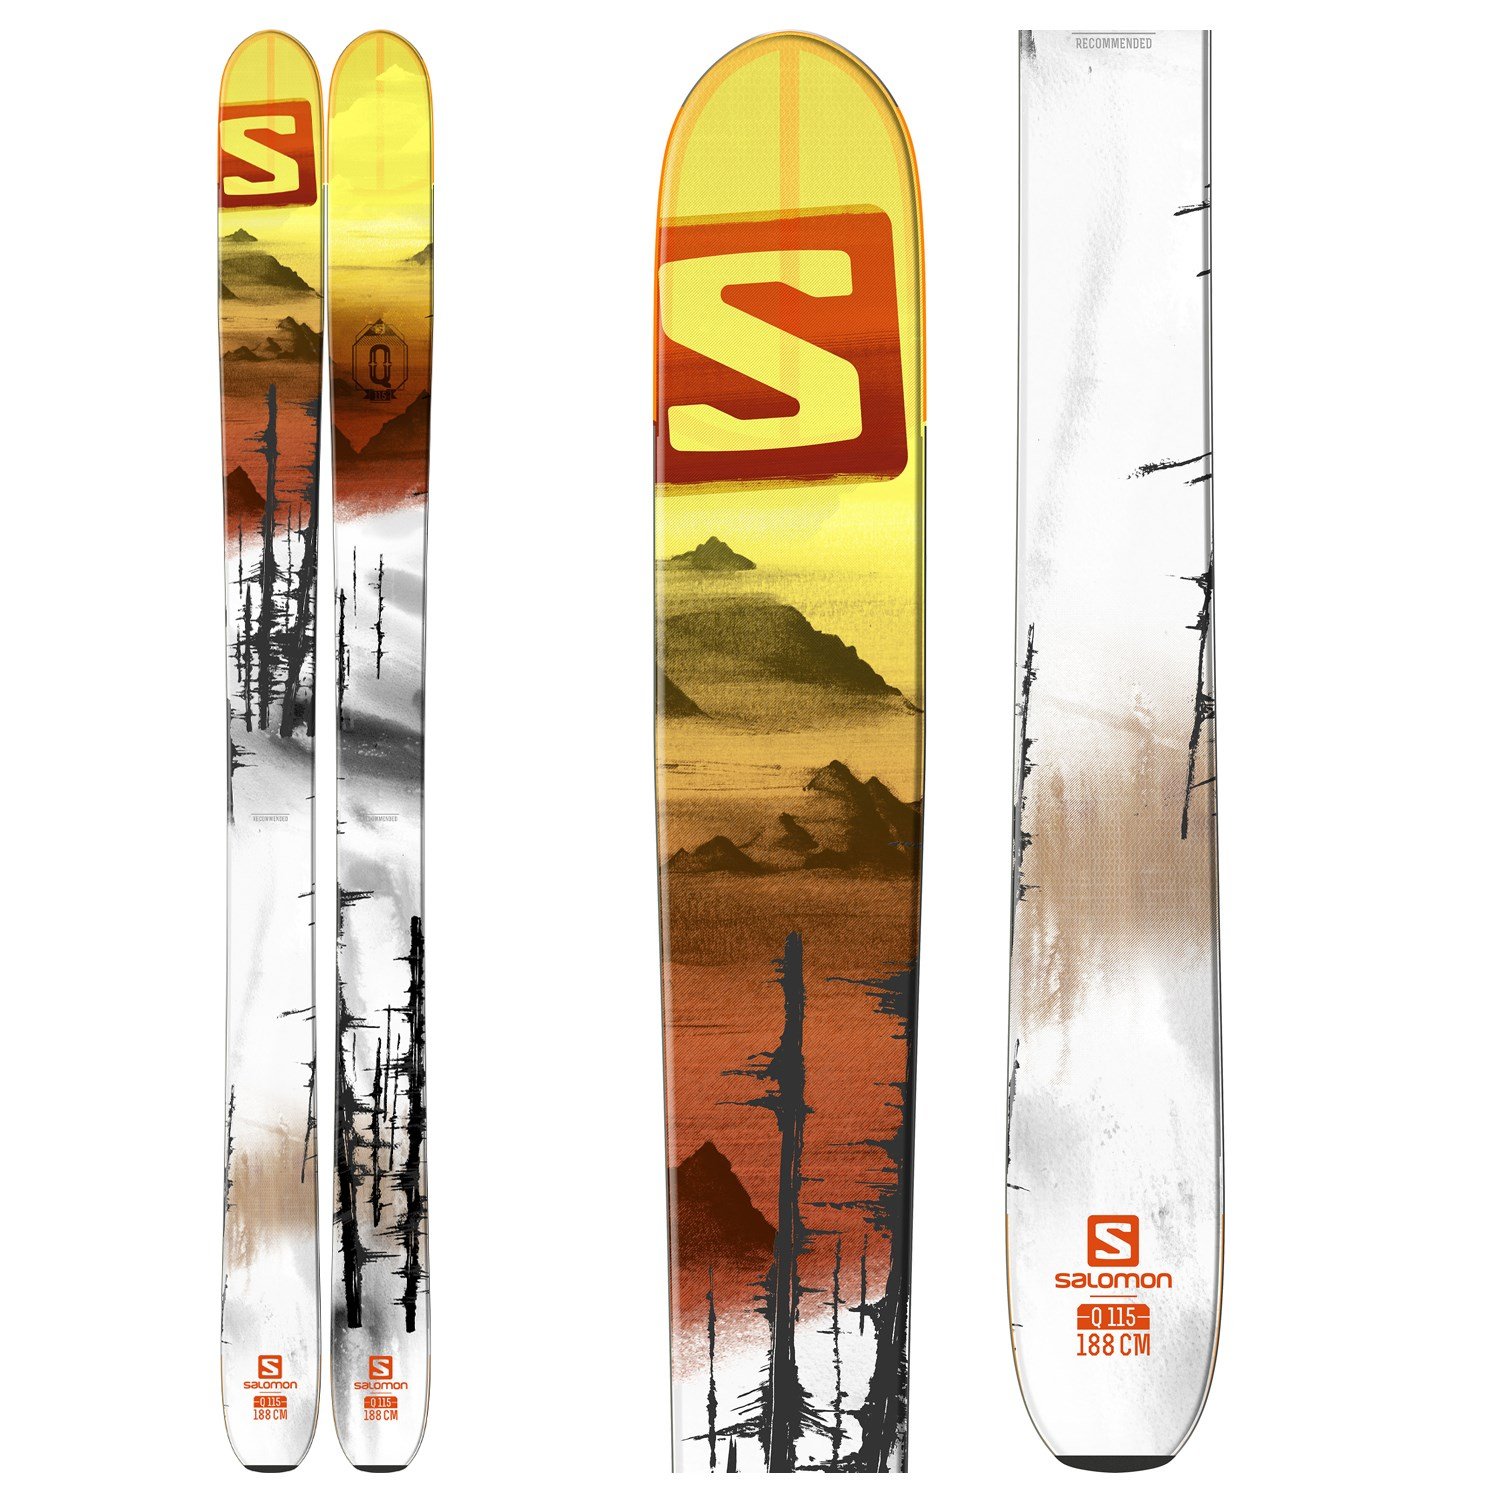 Morgen Hele tiden overtale Best Salomon Skis Outlet - www.highlifebathrooms.com 1693530379